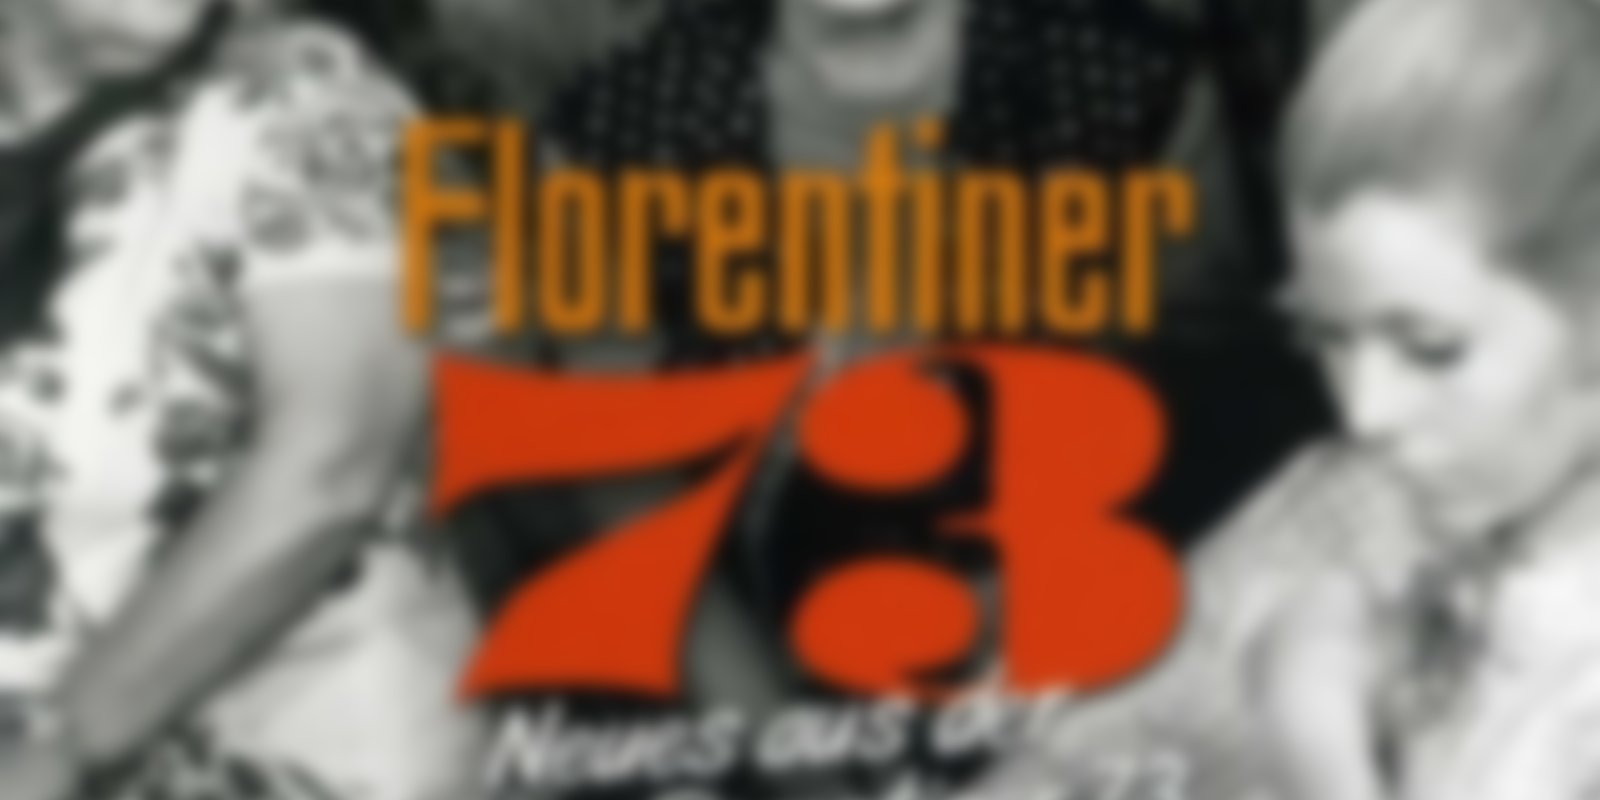 Neues aus der Florentiner 73